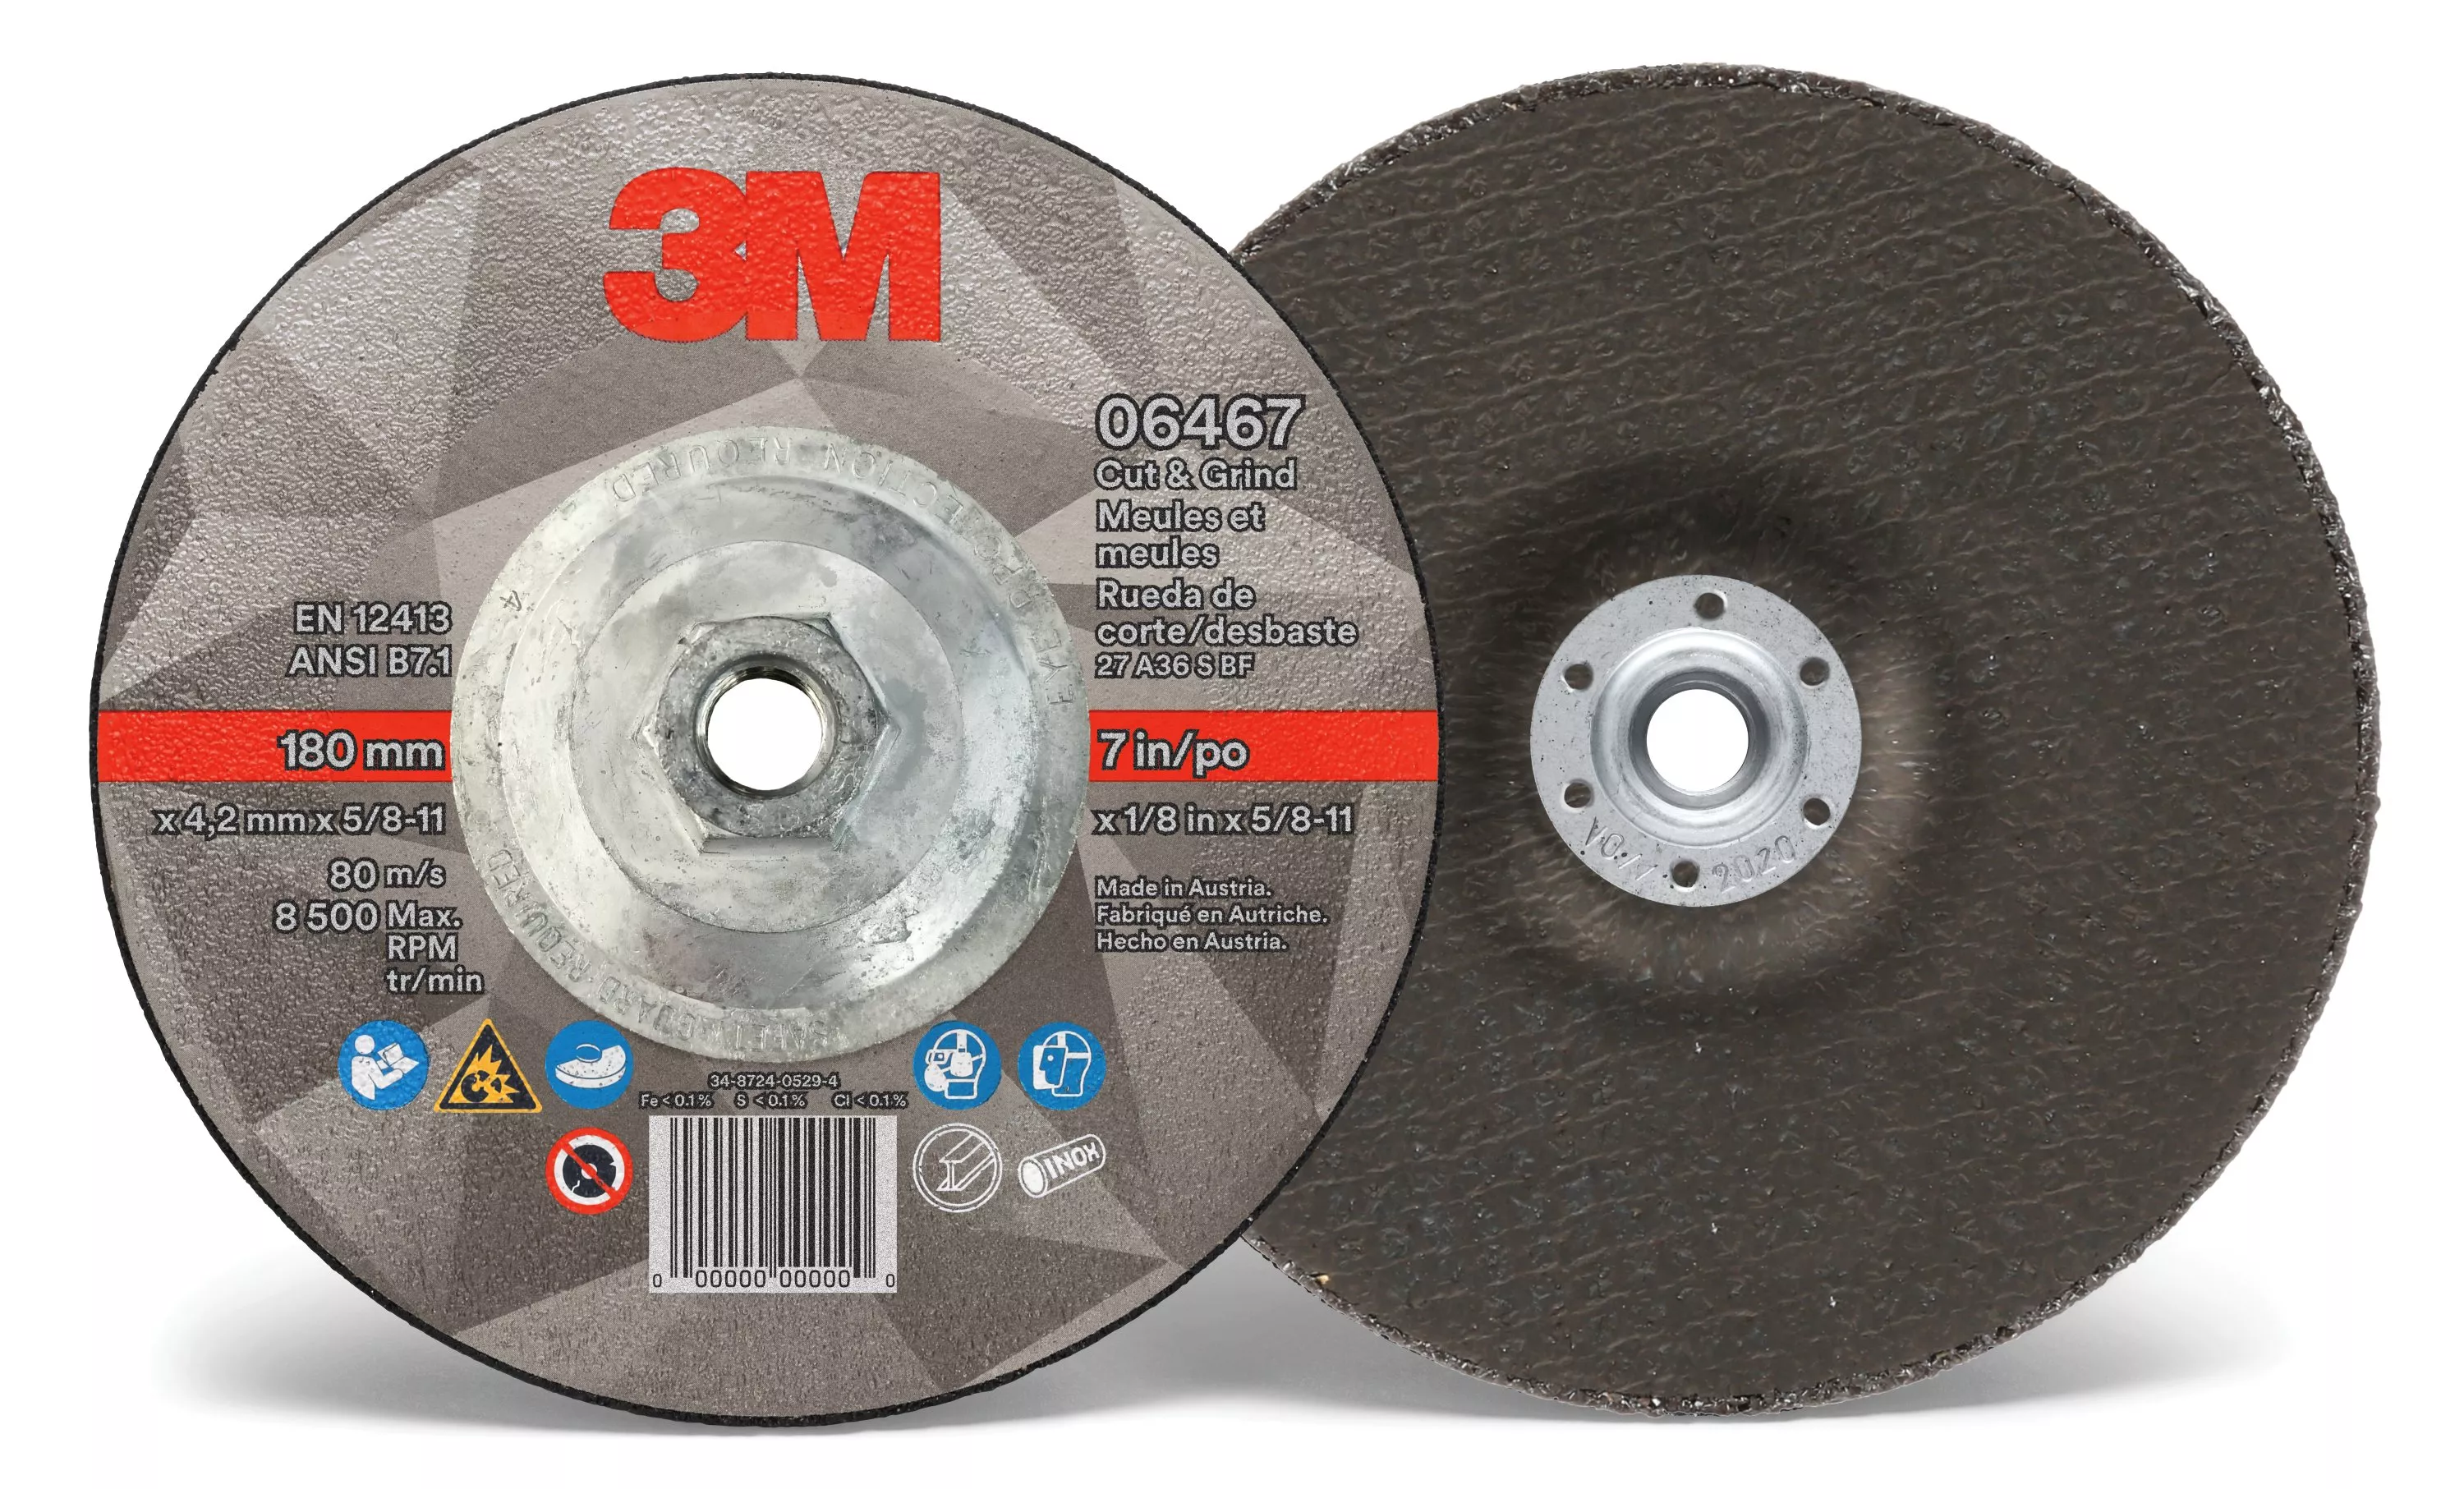 3M™ Cut & Grind Wheel, 06467, T27, 7 in x 1/8 in x 5/8 in-11, Quick
Change, 10/Carton, 20 ea/Case